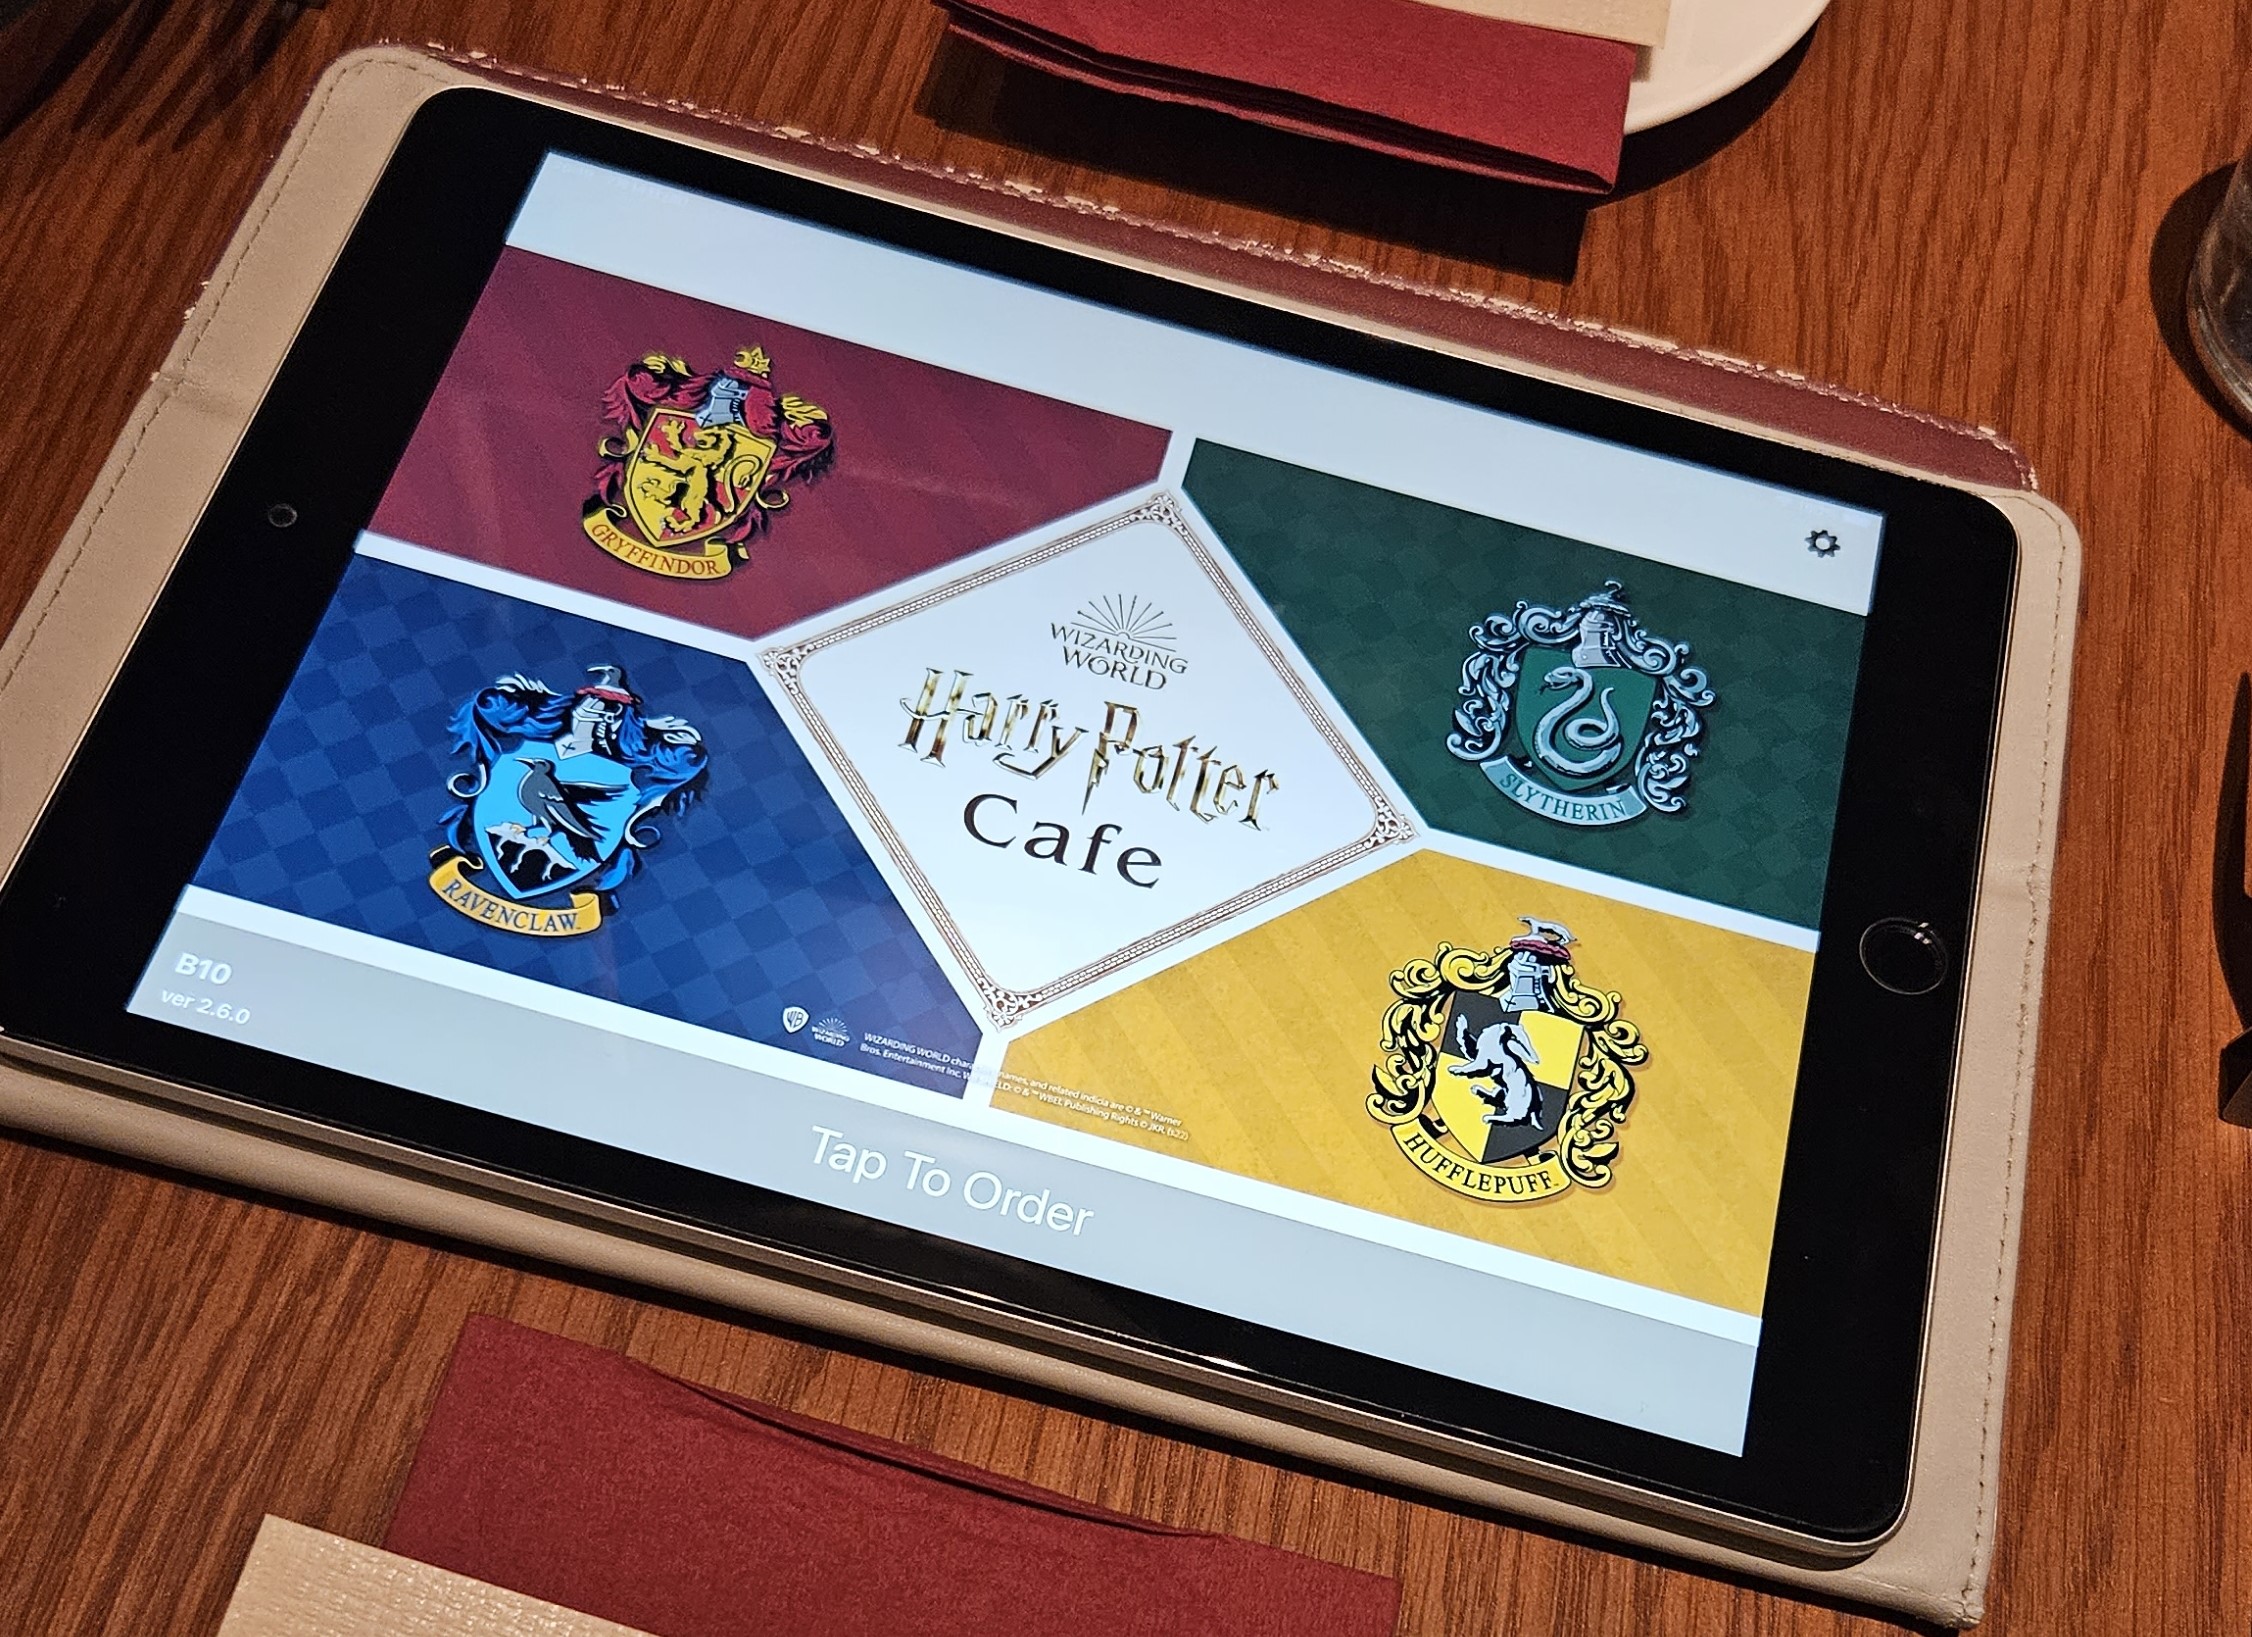 Harry Potter Cafe - Tokyo, Japan